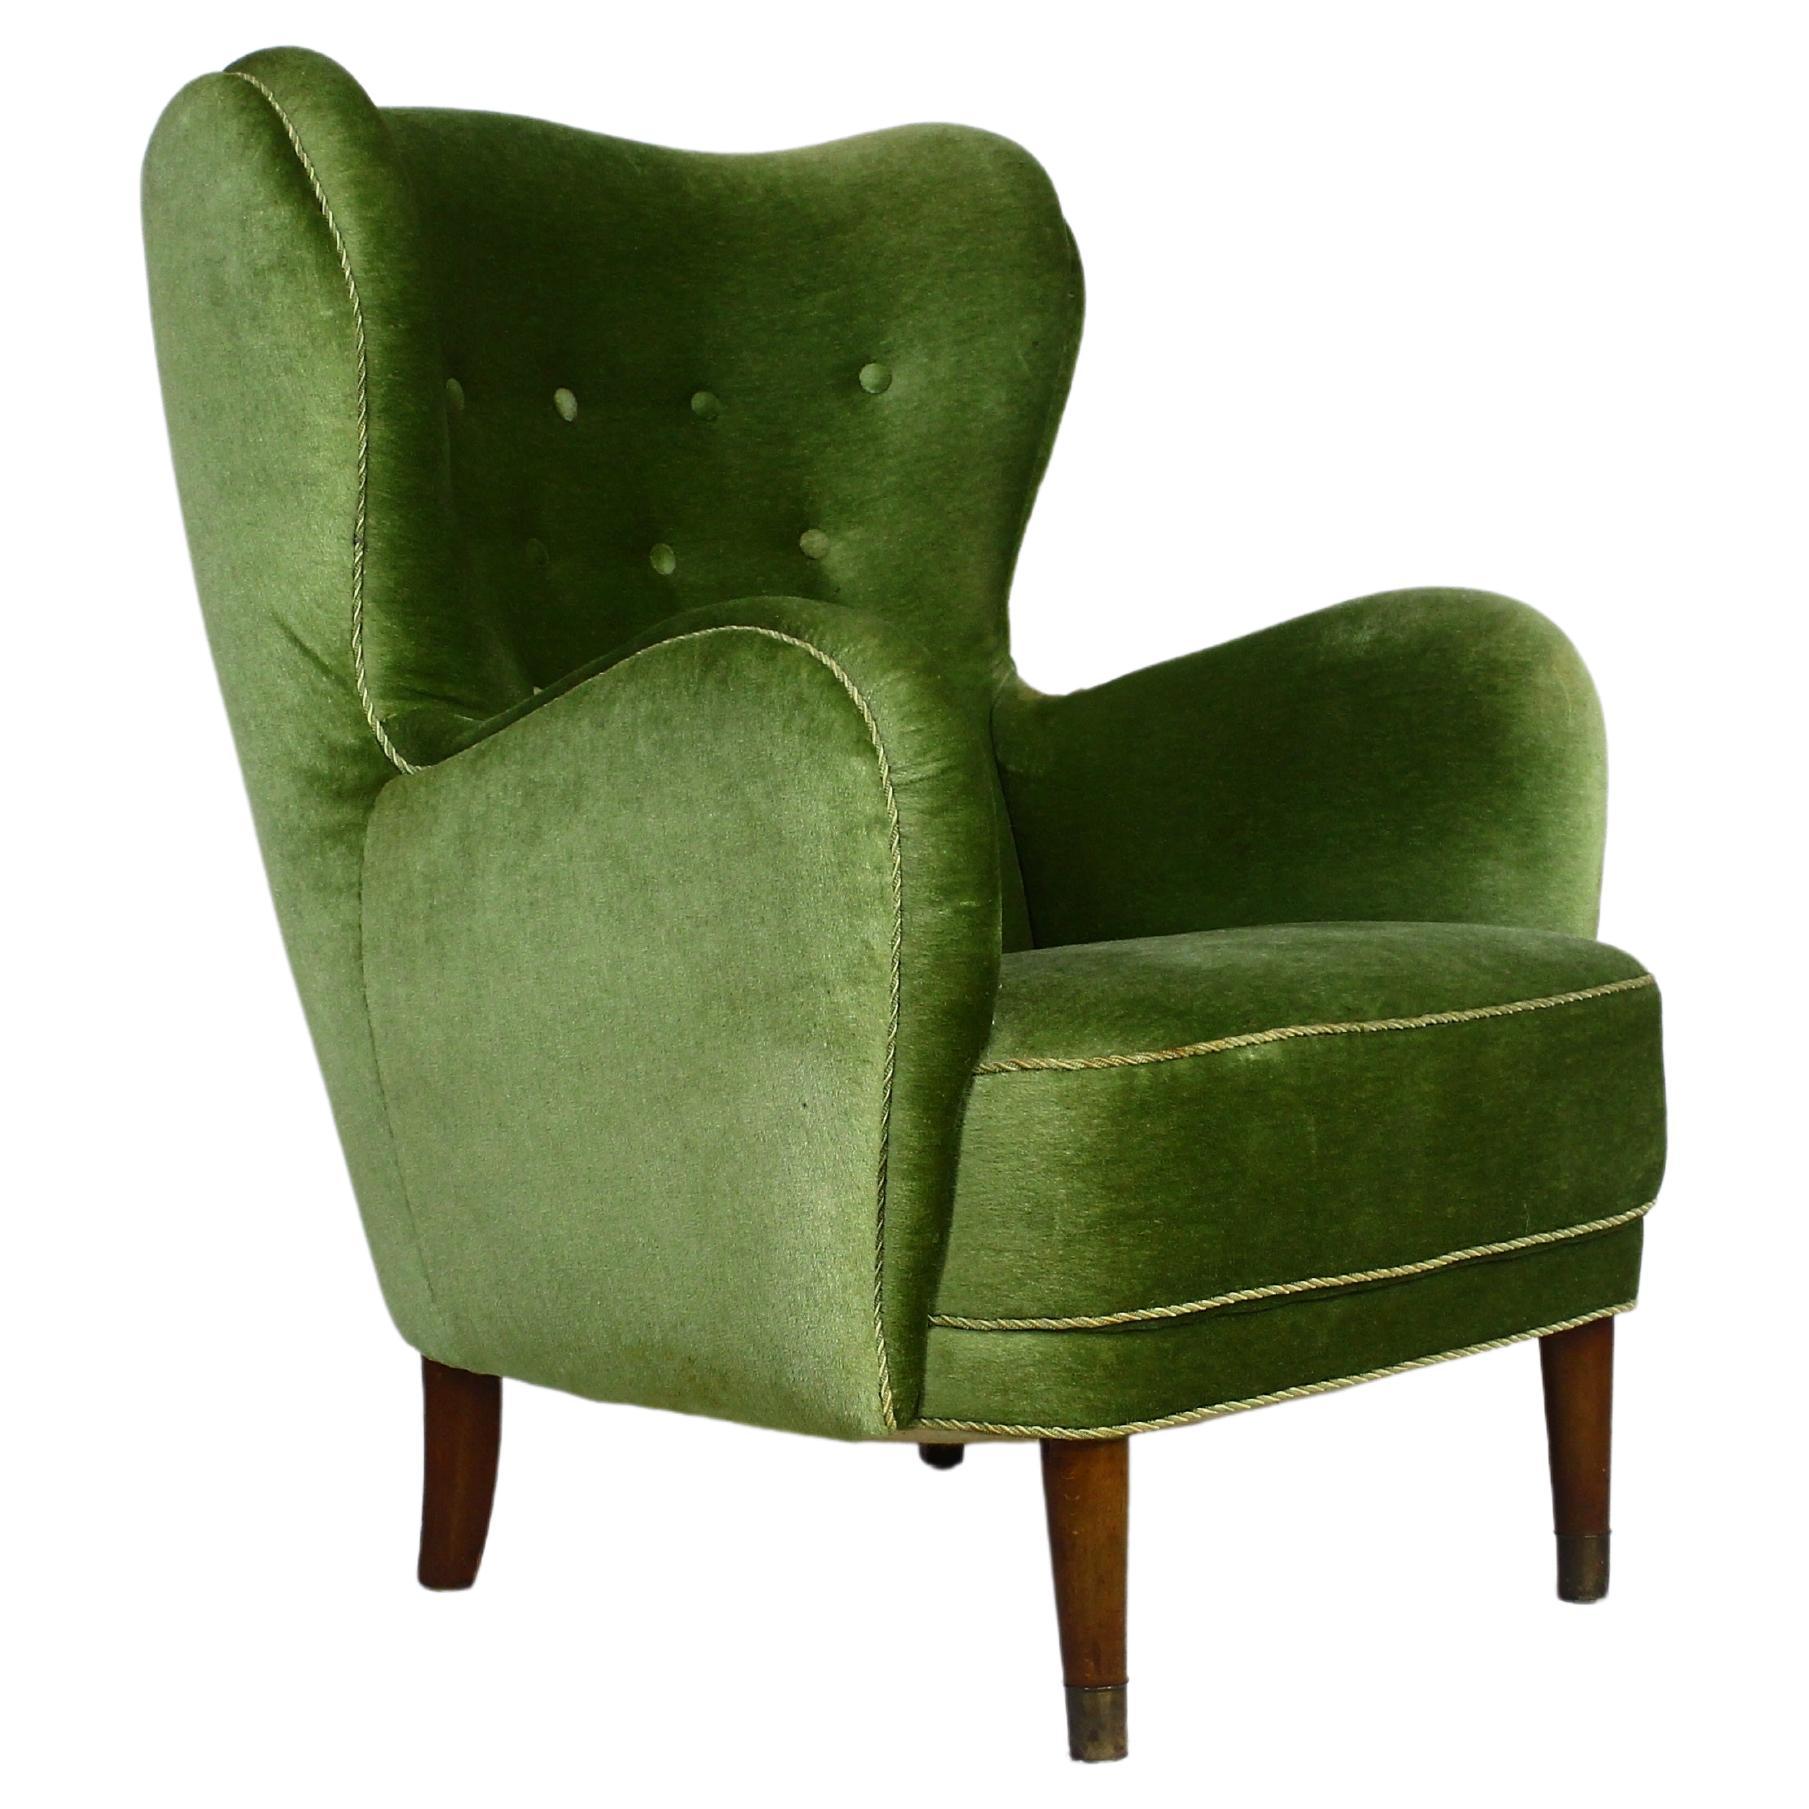 1950s Danish Lounge Chair in Green Velvet